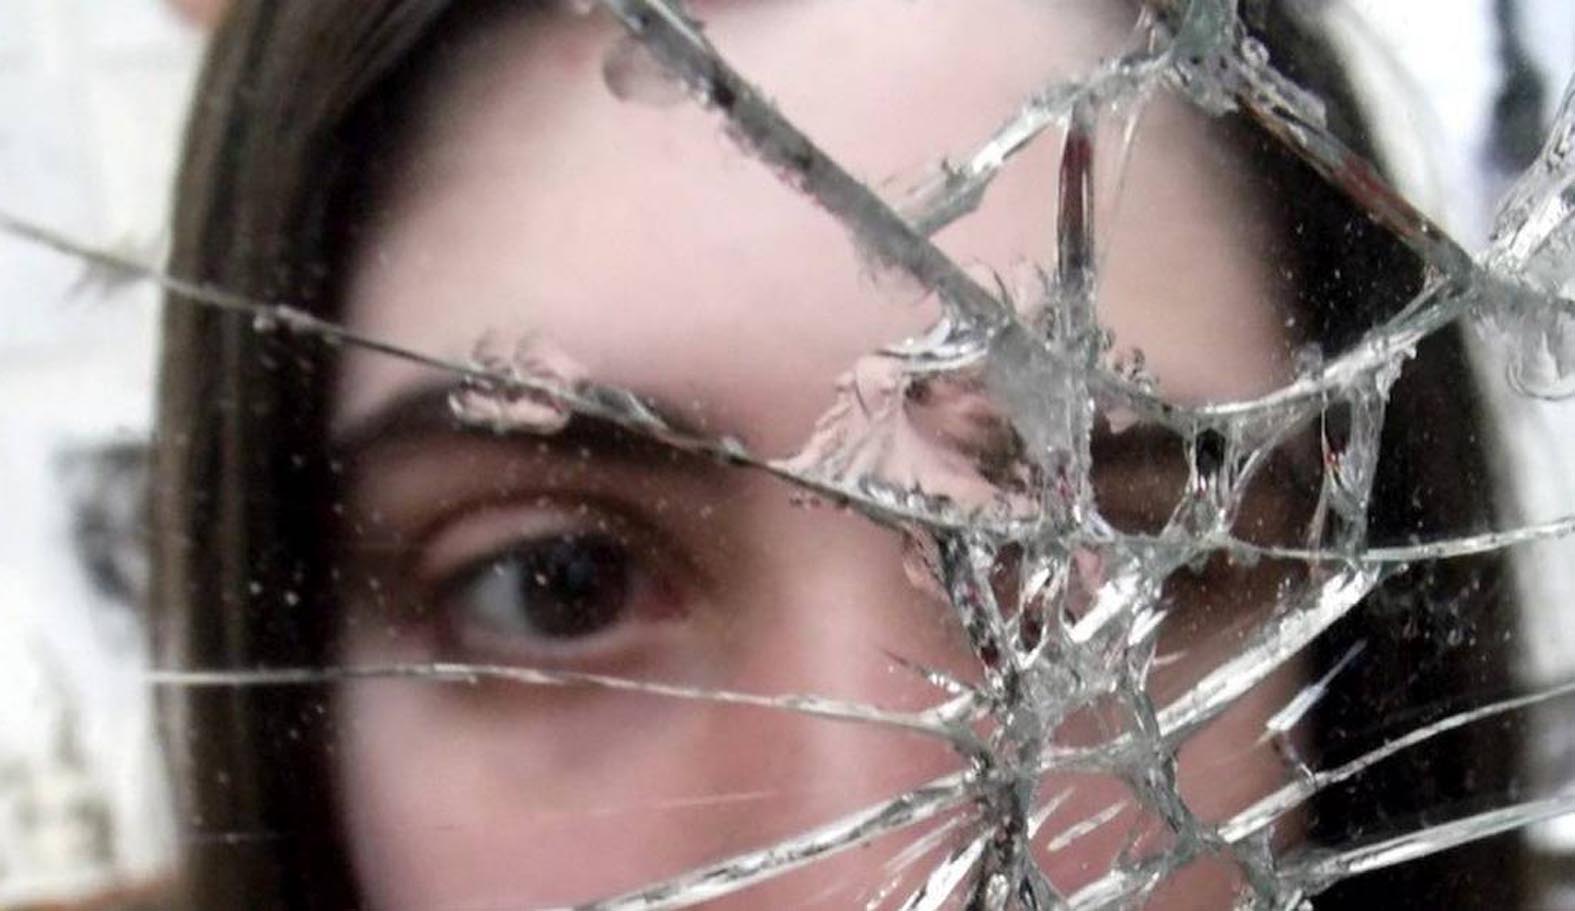 Отражение девушки в разбитом зеркале